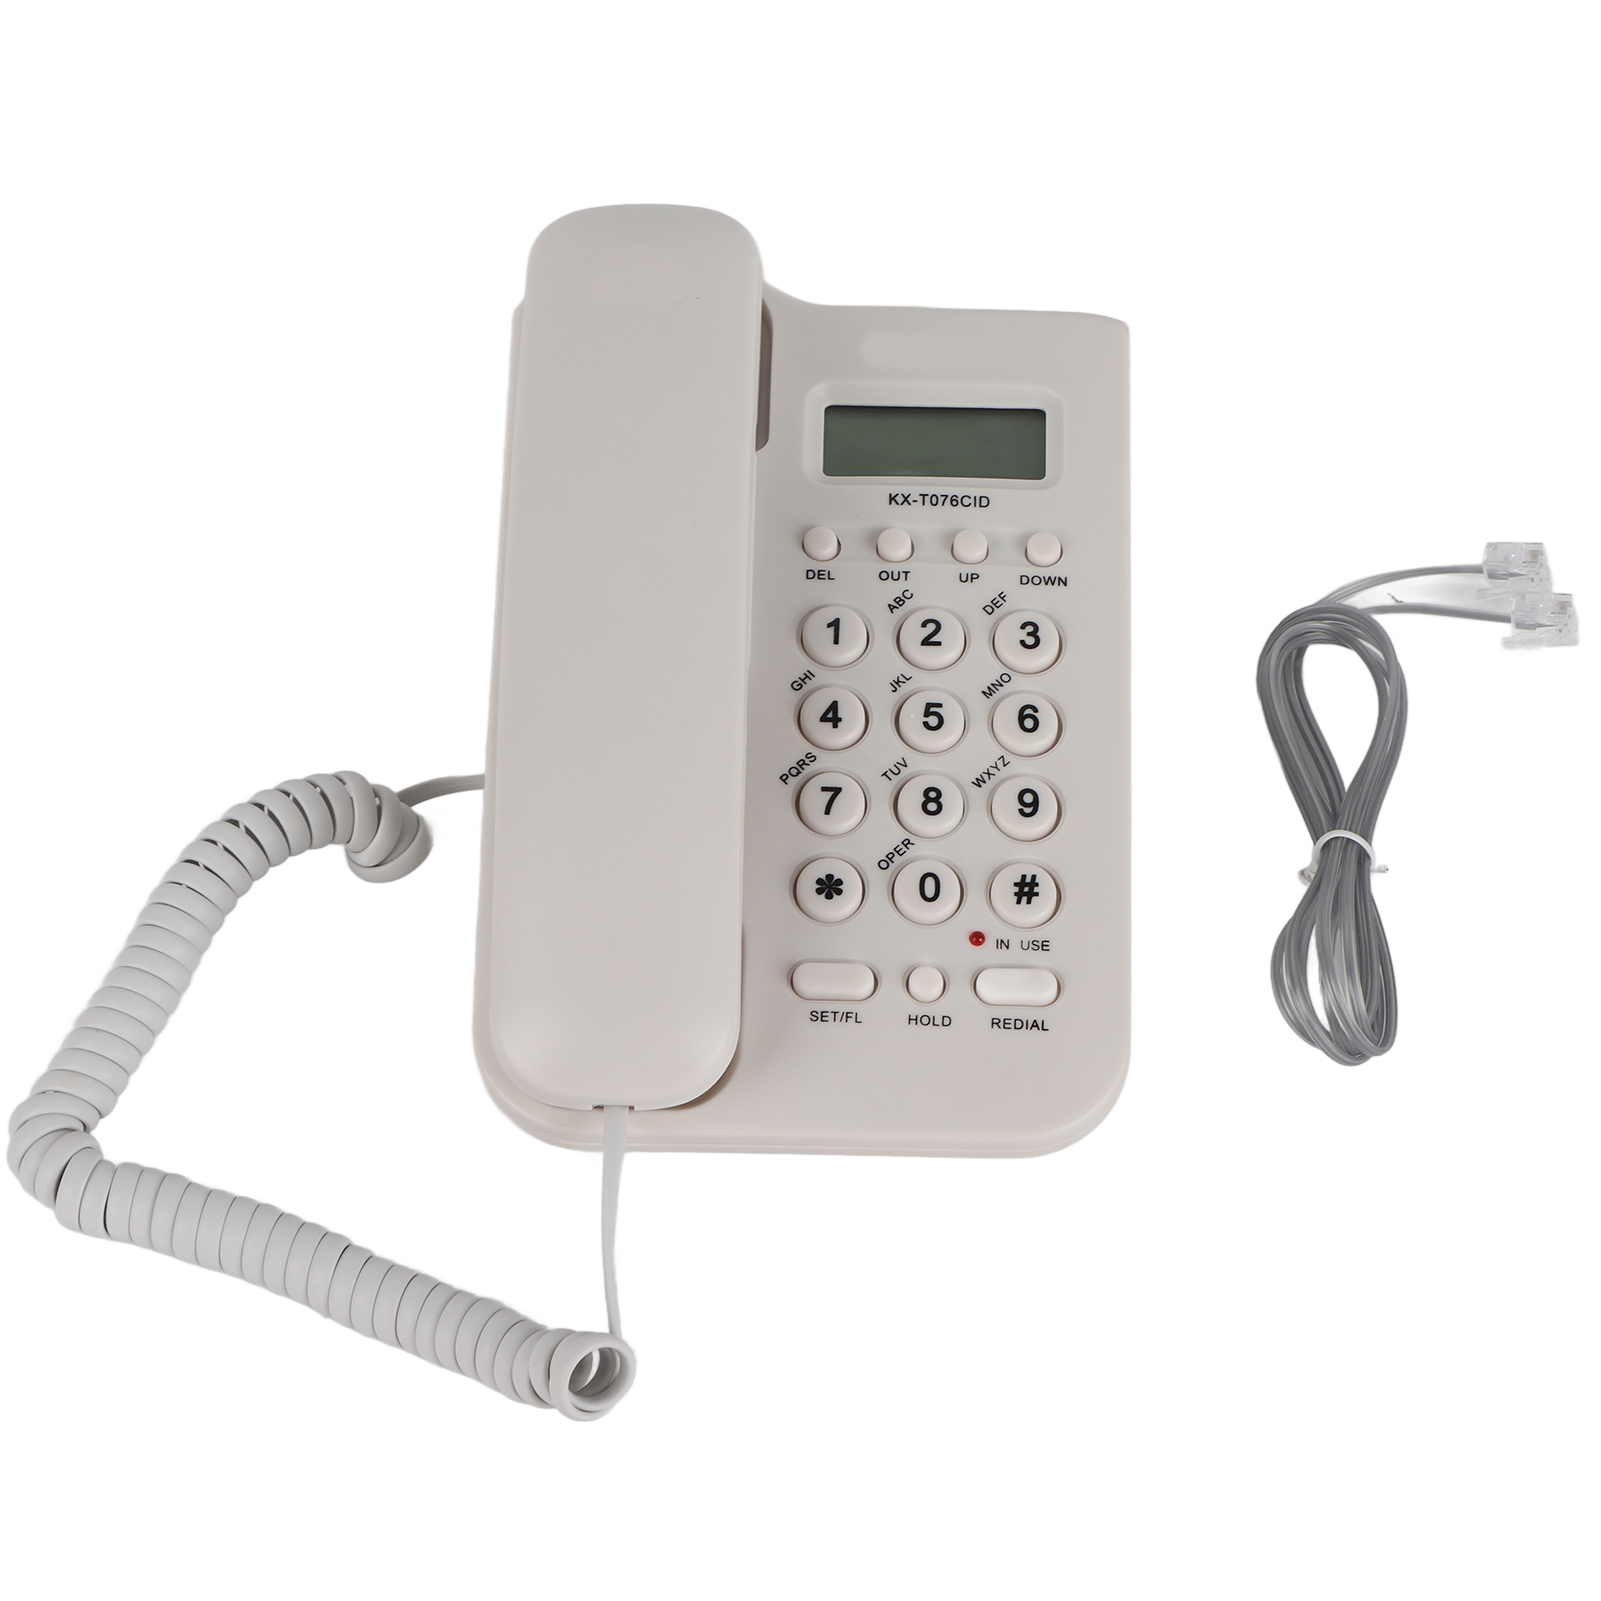 高速配送コード付き電話、デスクトップ電話固定電話有線電話ウォール電話、コードと通話ディスプレイ、FSK   DTMFデュアルシステム、ホームオフィスホテル用 (白)